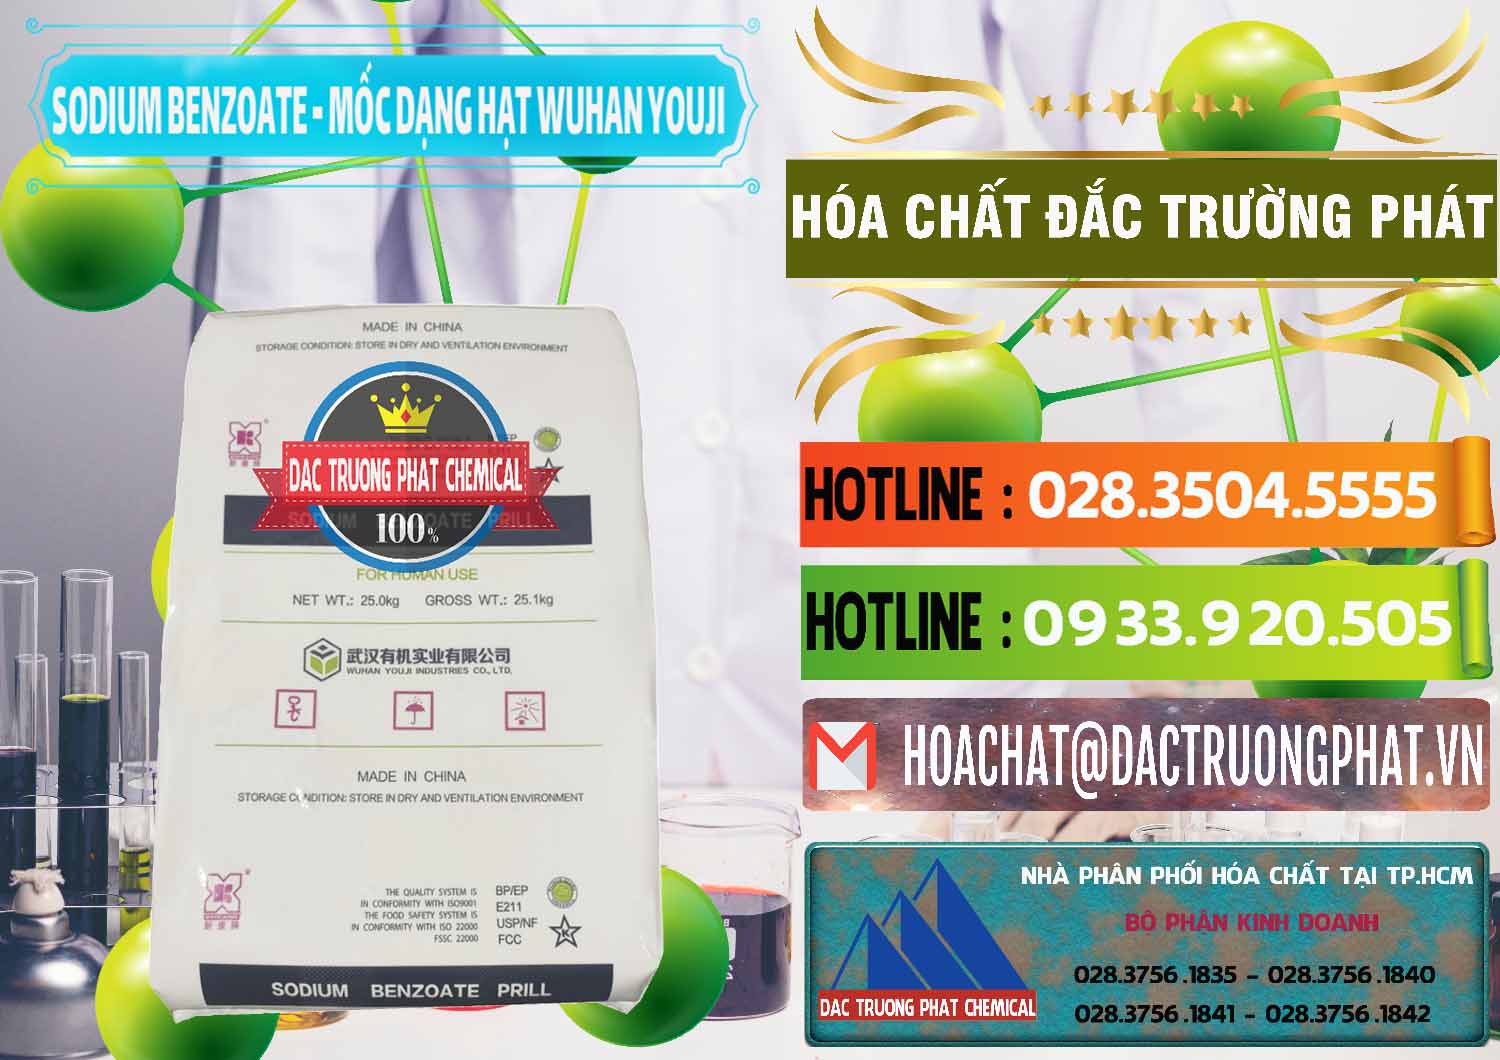 Đơn vị chuyên kinh doanh - bán Sodium Benzoate - Mốc Dạng Hạt Food Grade Wuhan Youji Trung Quốc China - 0276 - Chuyên cung cấp - kinh doanh hóa chất tại TP.HCM - cungcaphoachat.com.vn